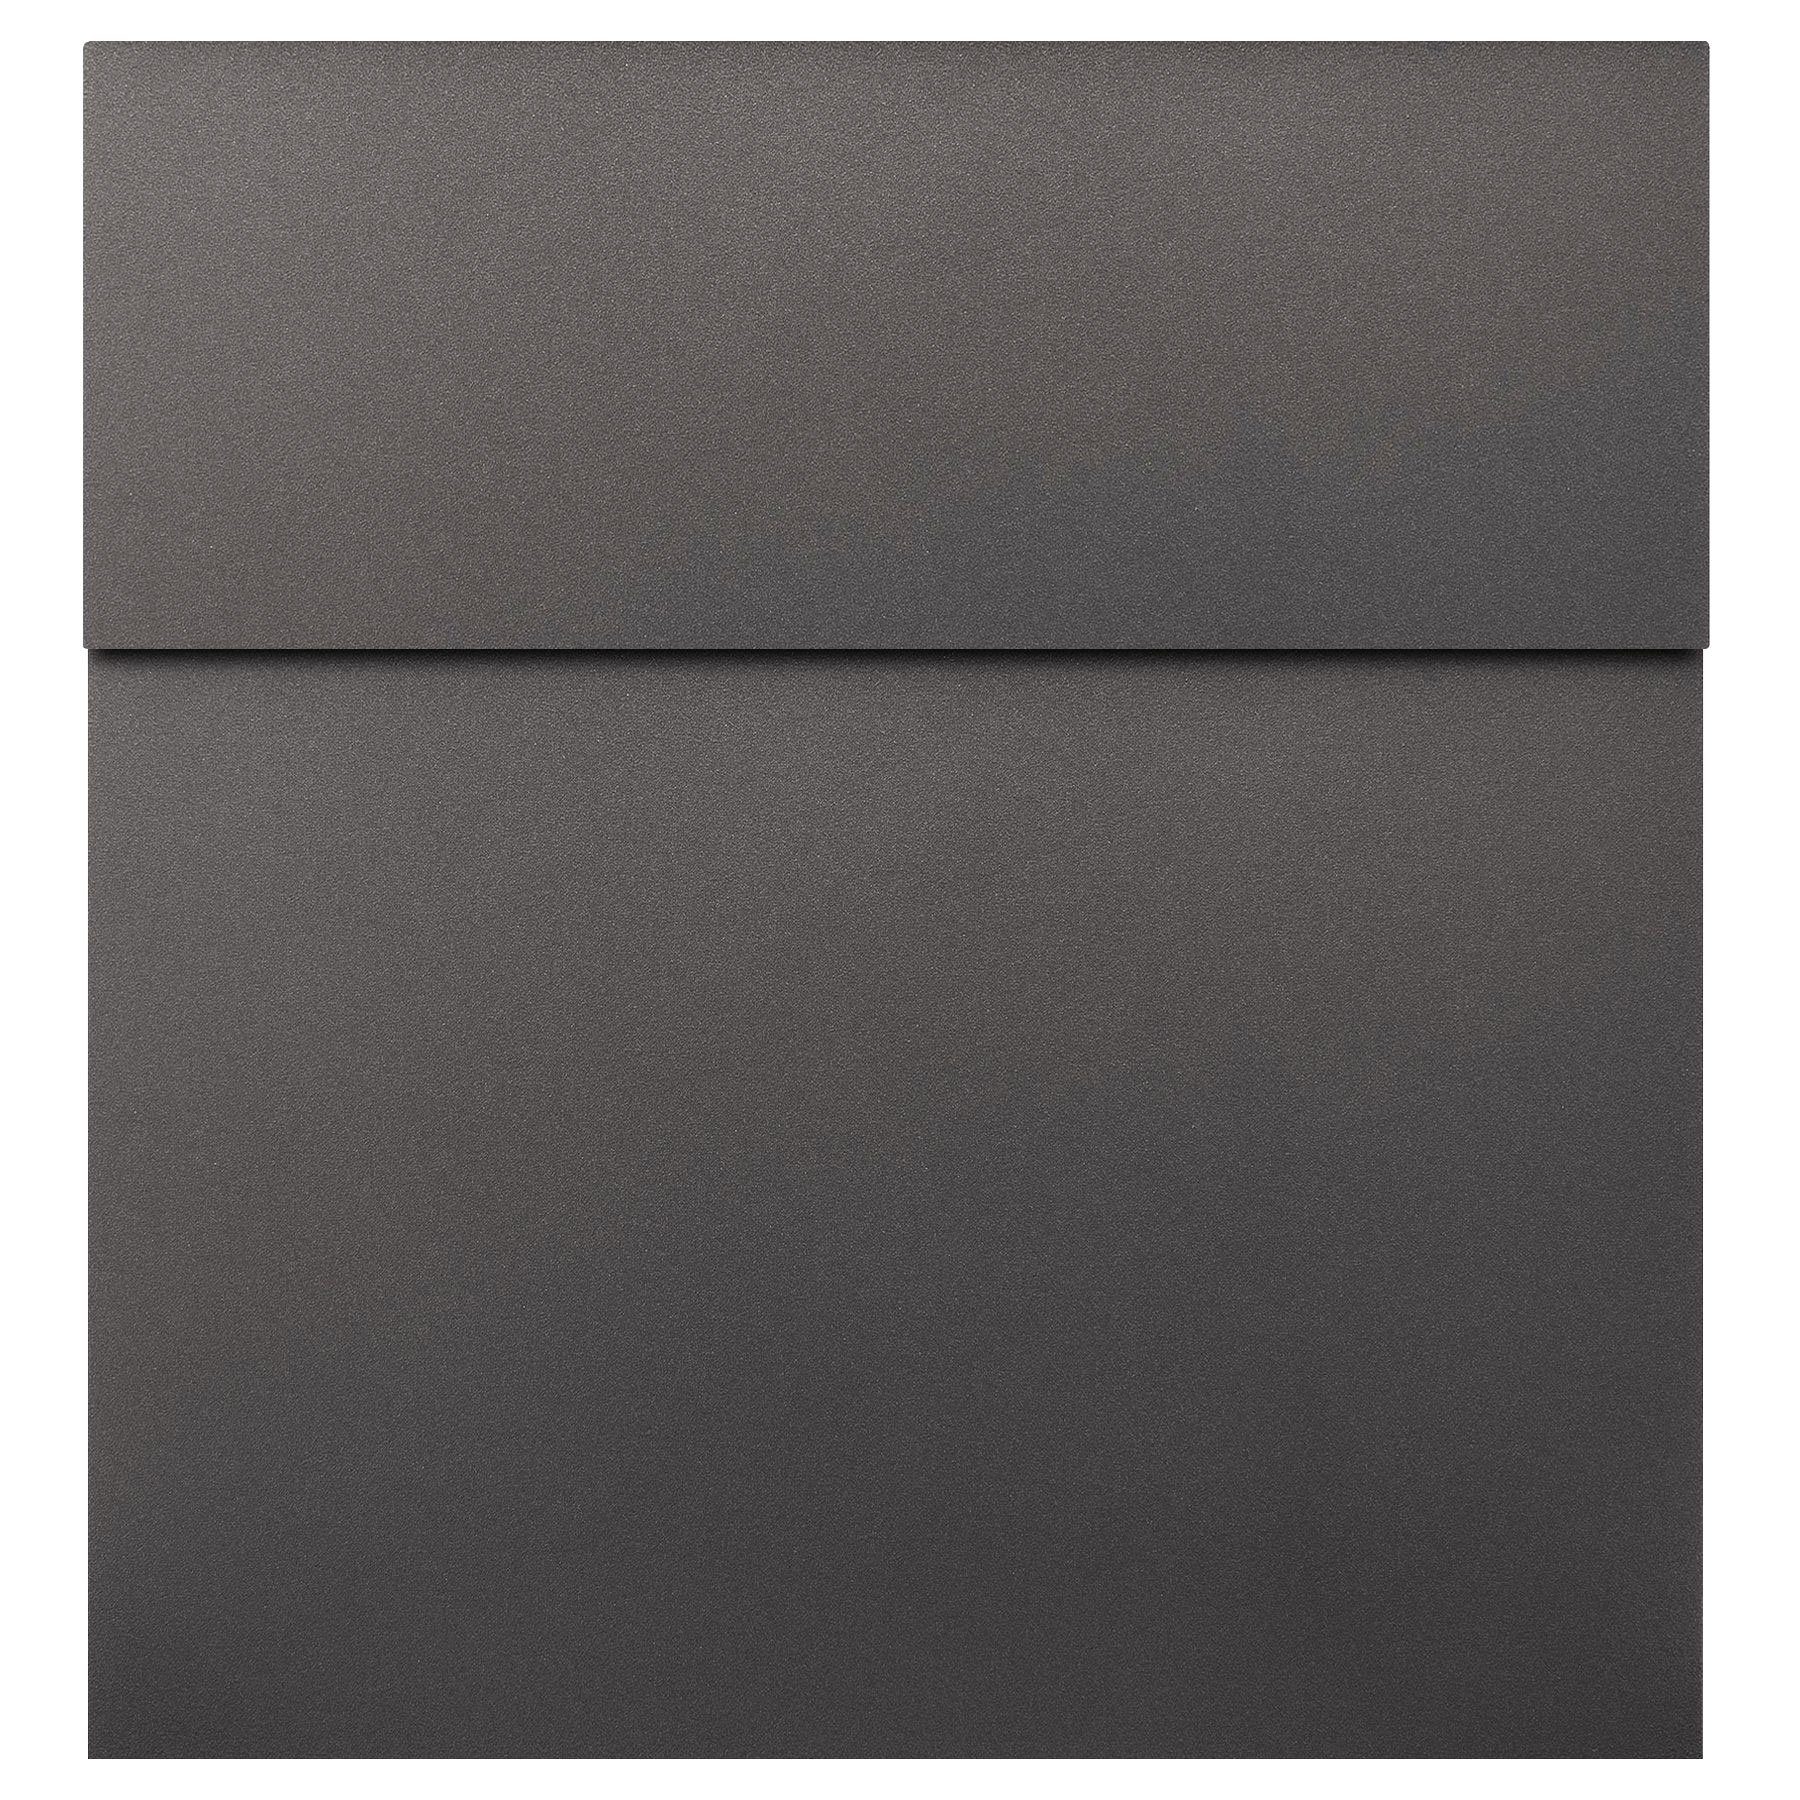 MOCAVI Briefkasten »MOCAVI Box 570 Design-Briefkasten  anthrazit-eisenglimmer (DB 703)« online kaufen | OTTO